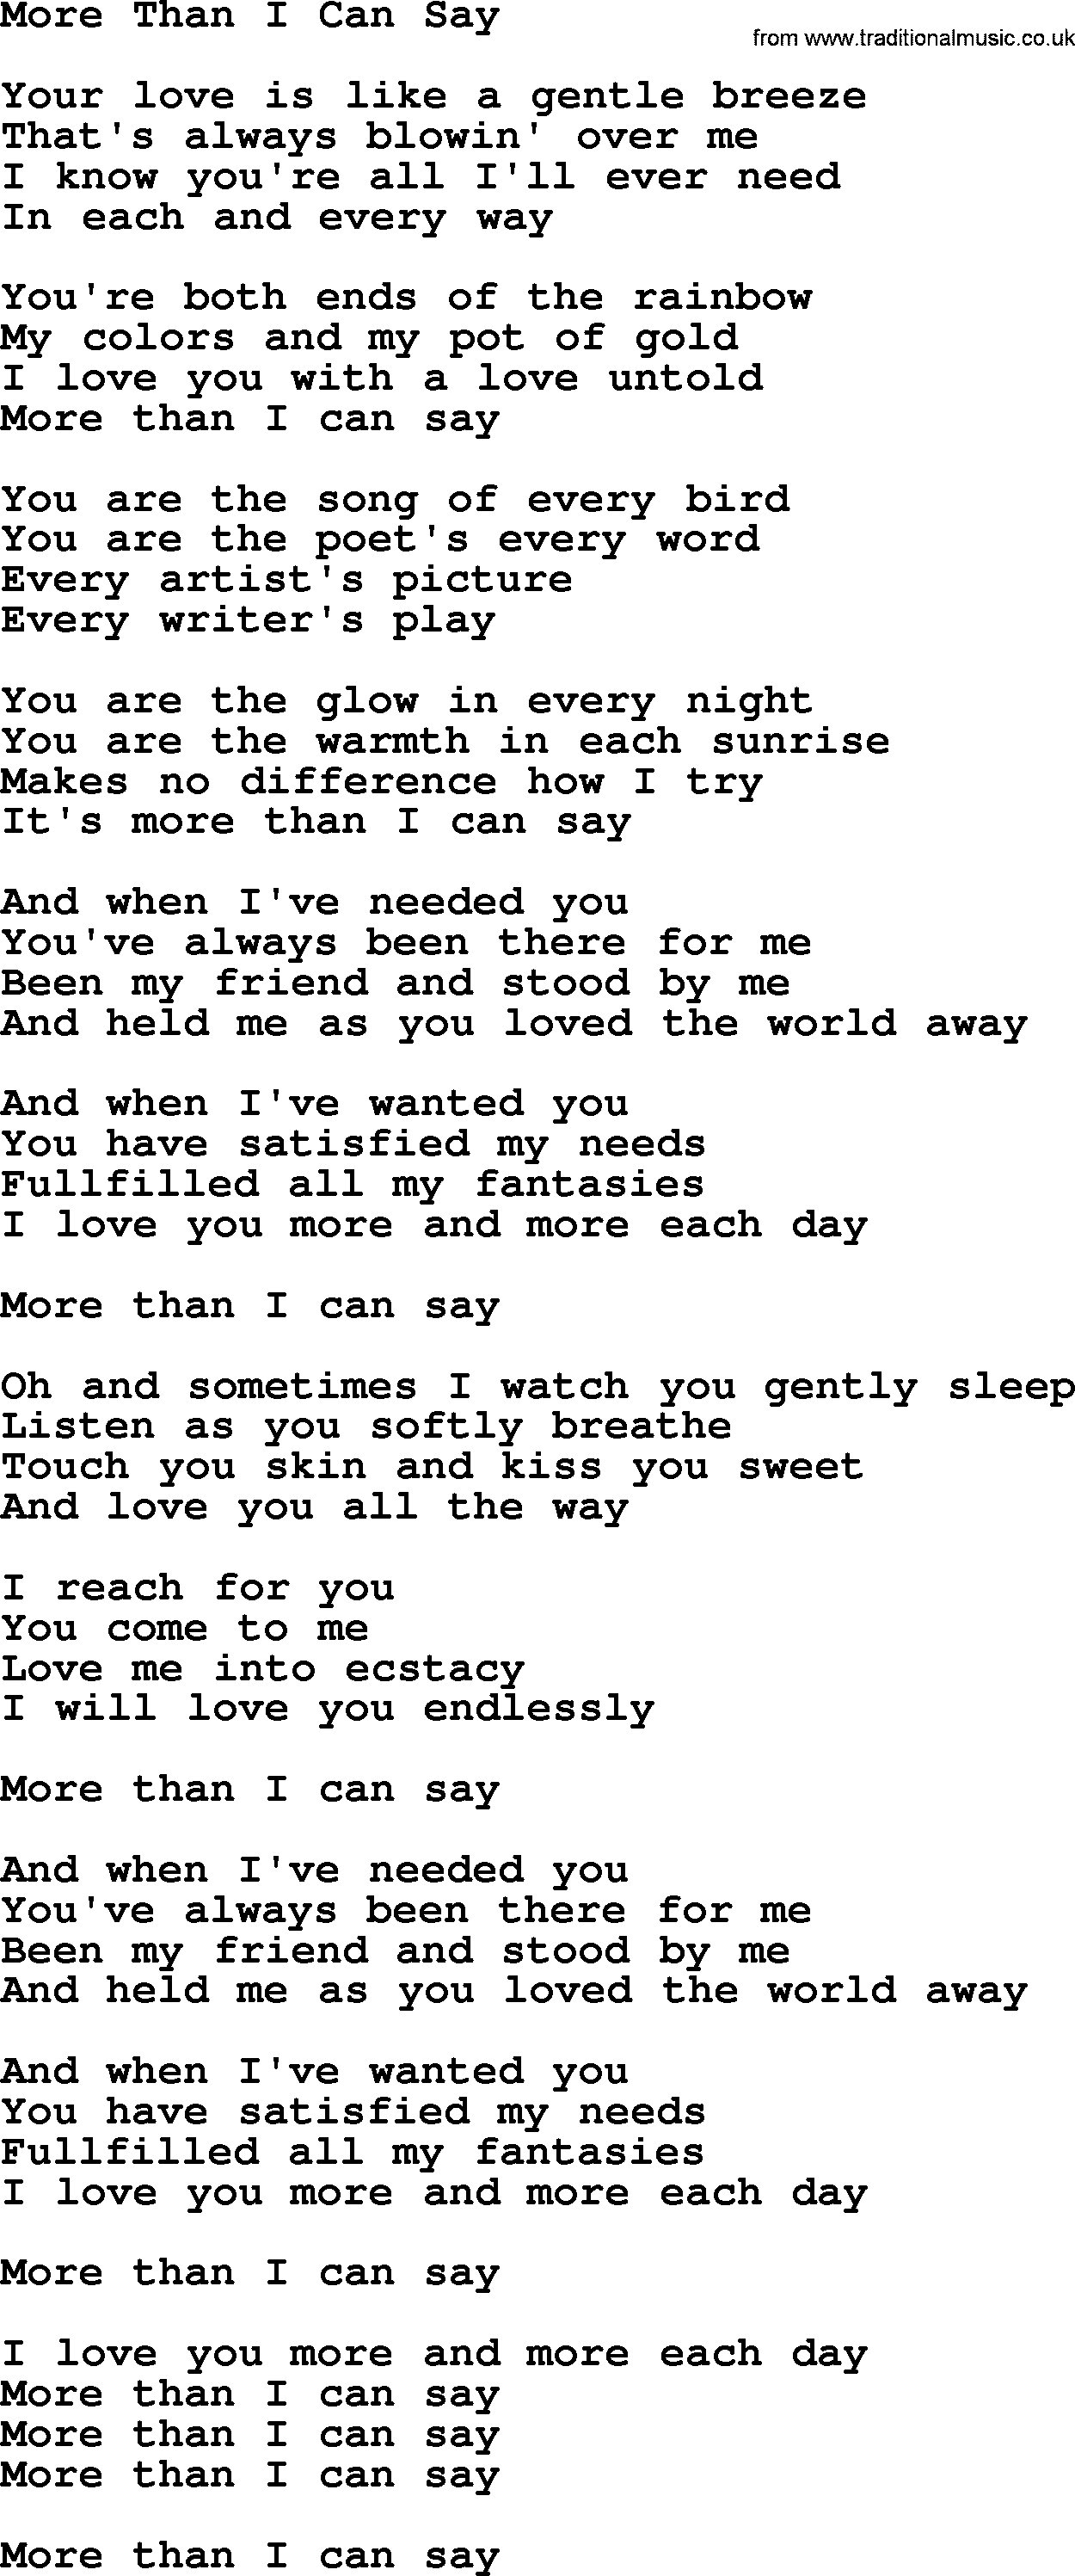 Dolly Parton song More Than I Can Say.txt lyrics